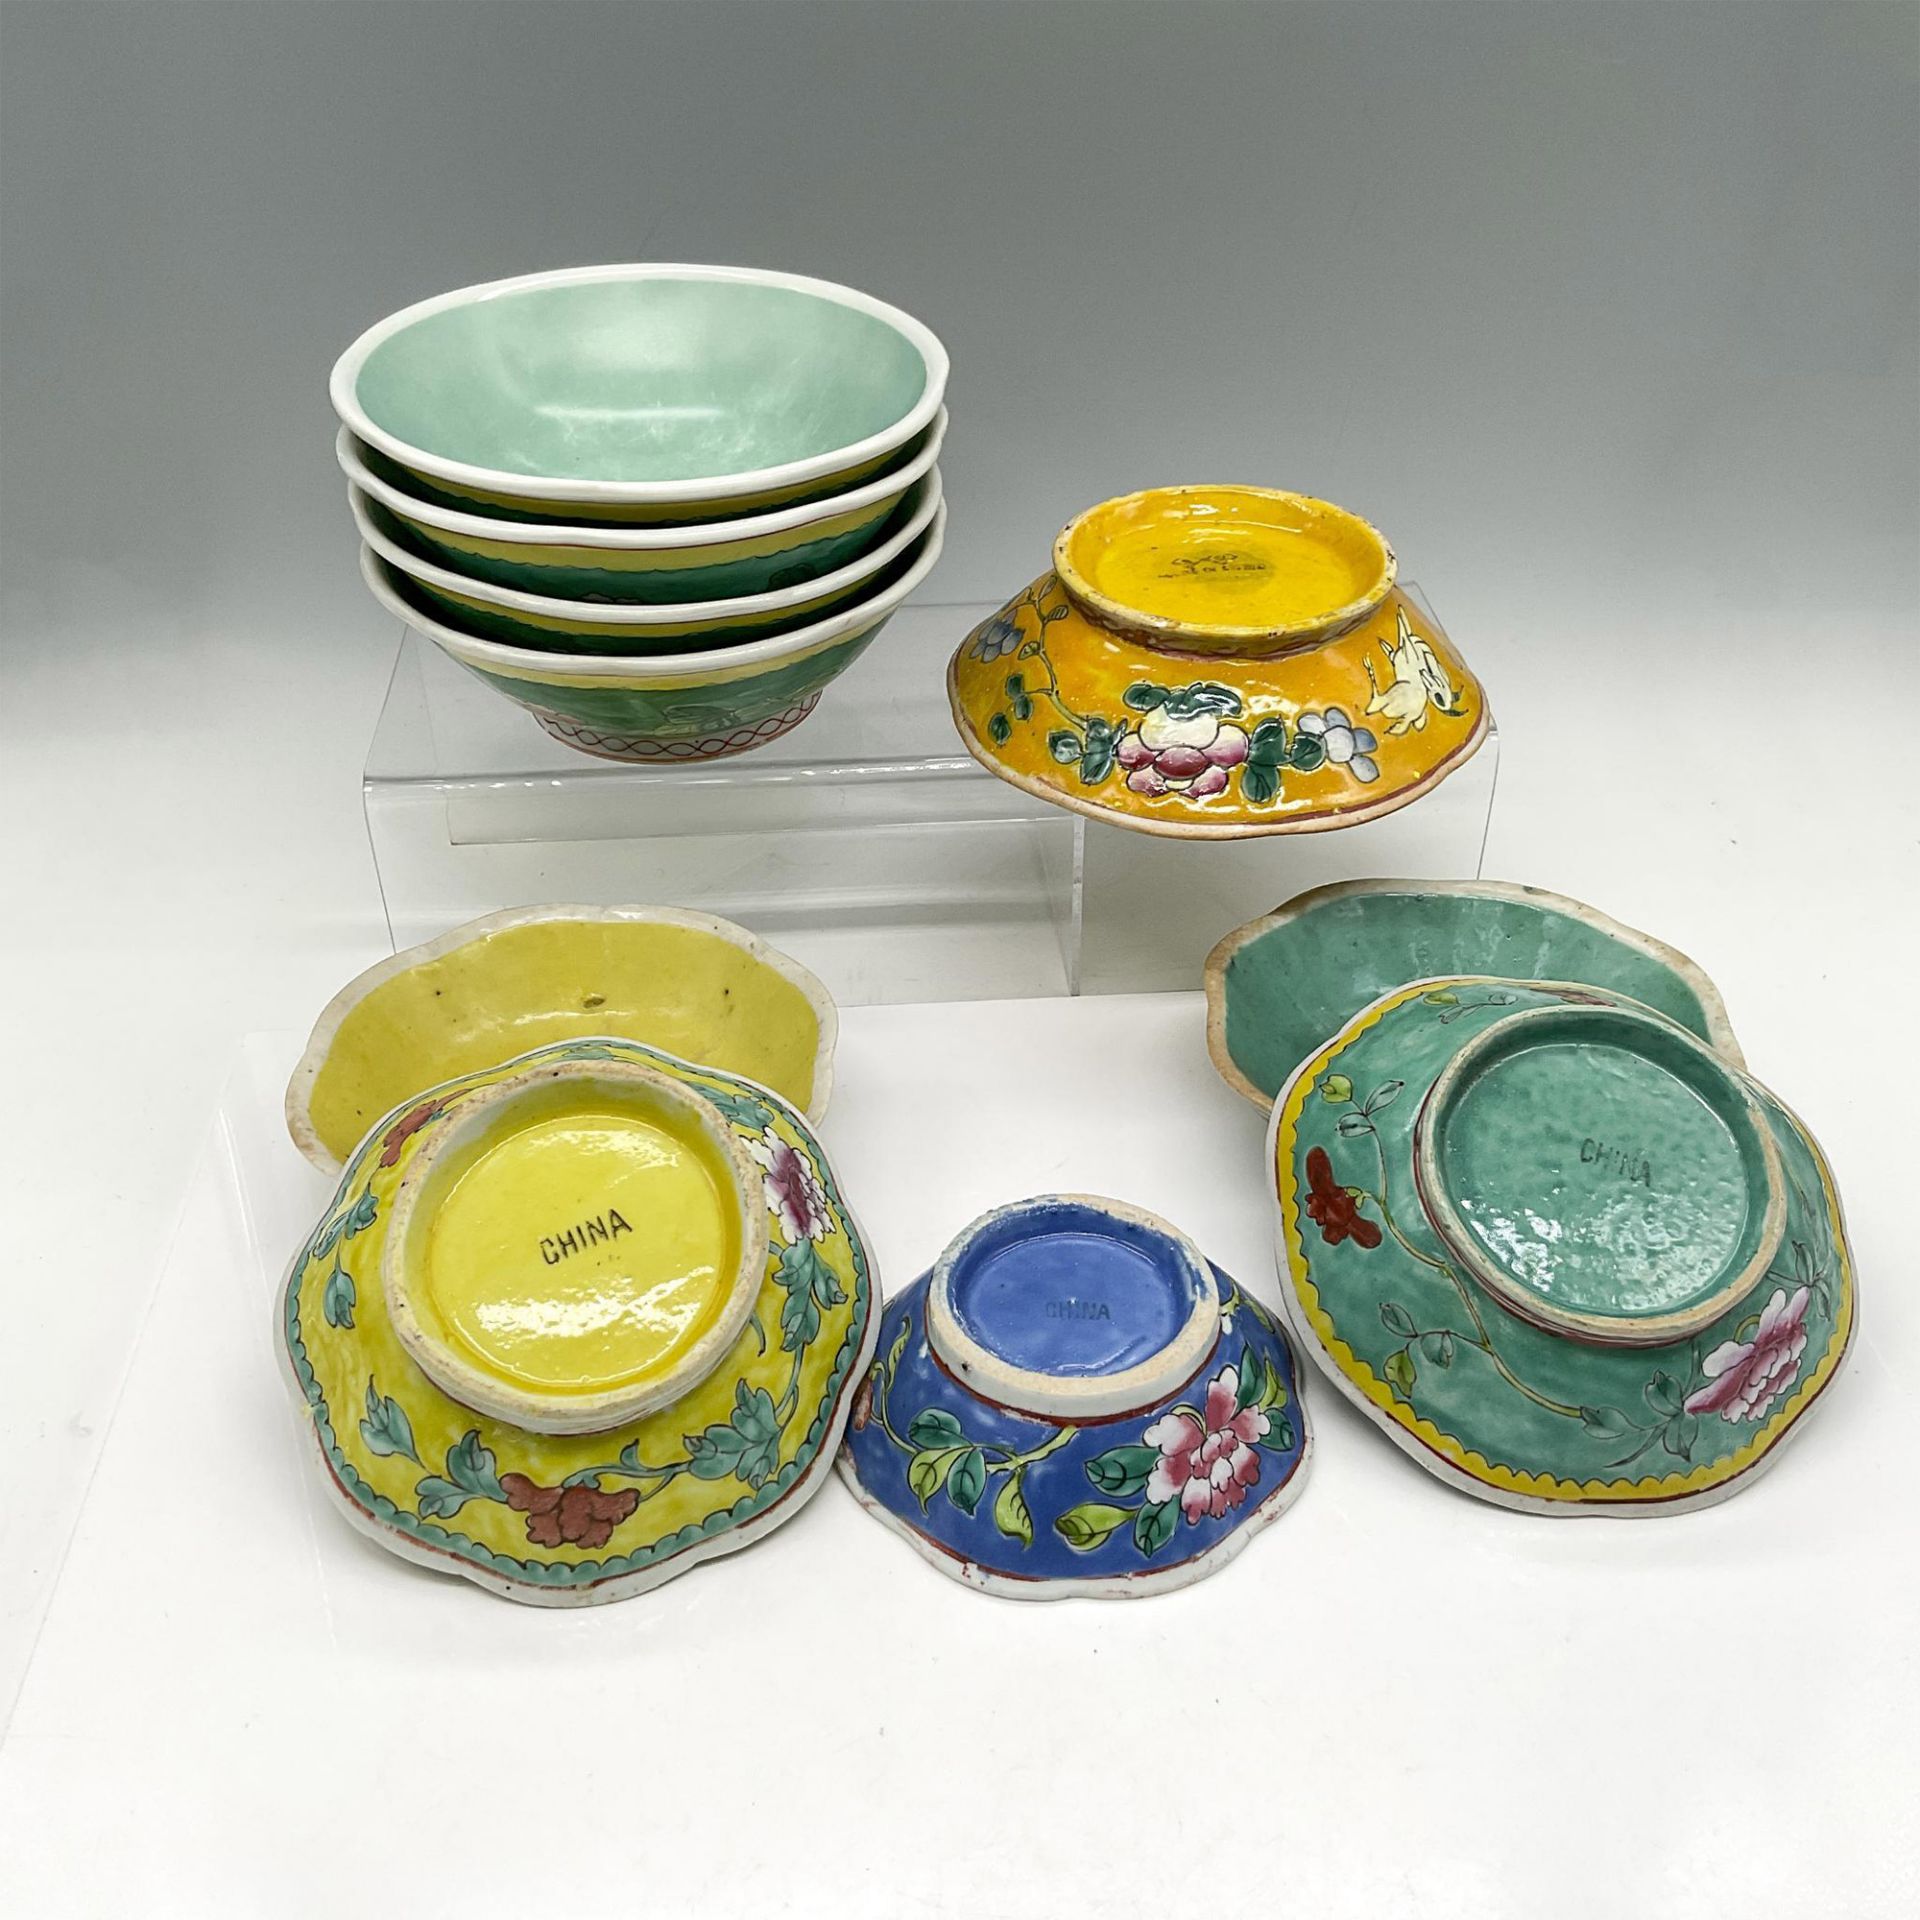 10pc Chinese Enameled Bowls - Image 3 of 3